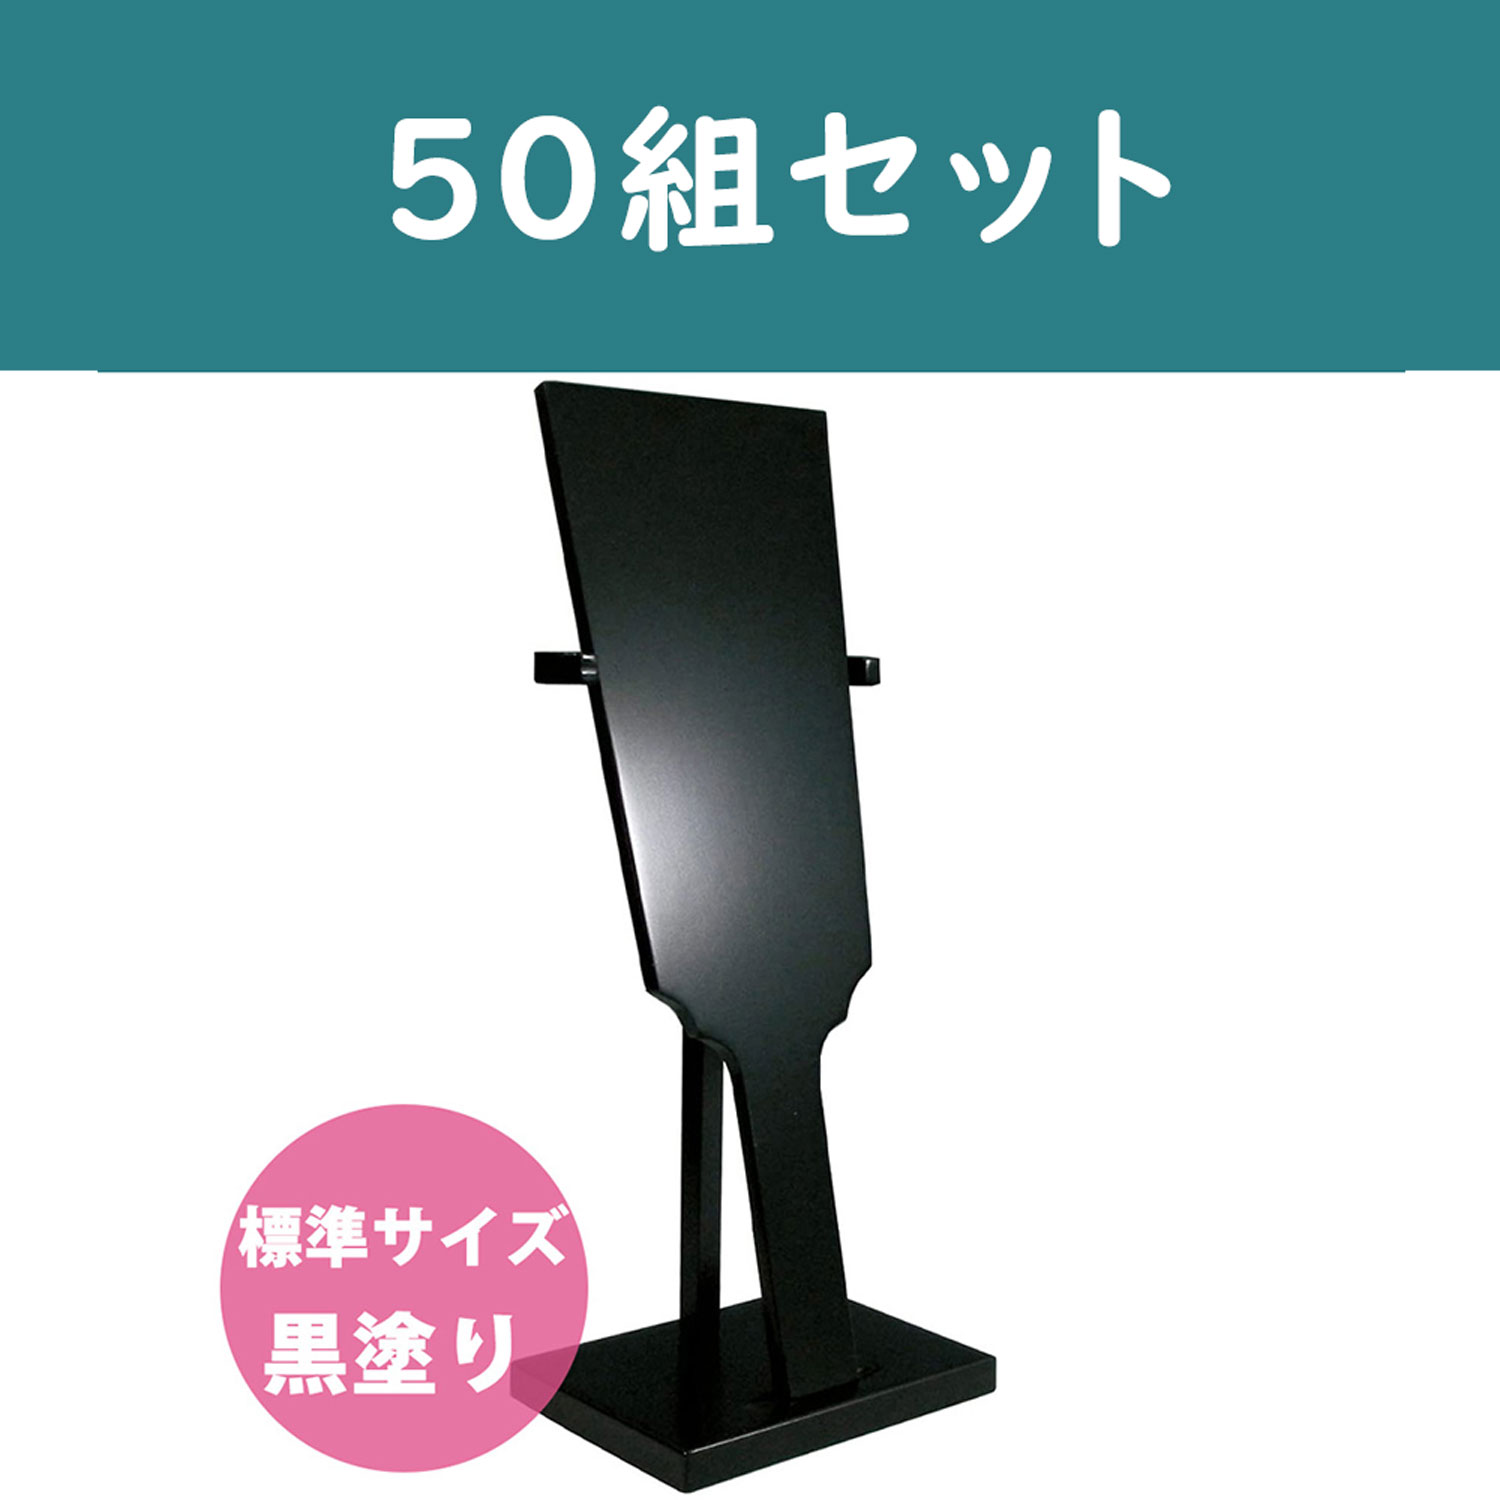 CC1246-50 Hagoita (Decorative Base) Black 50 sets (set)